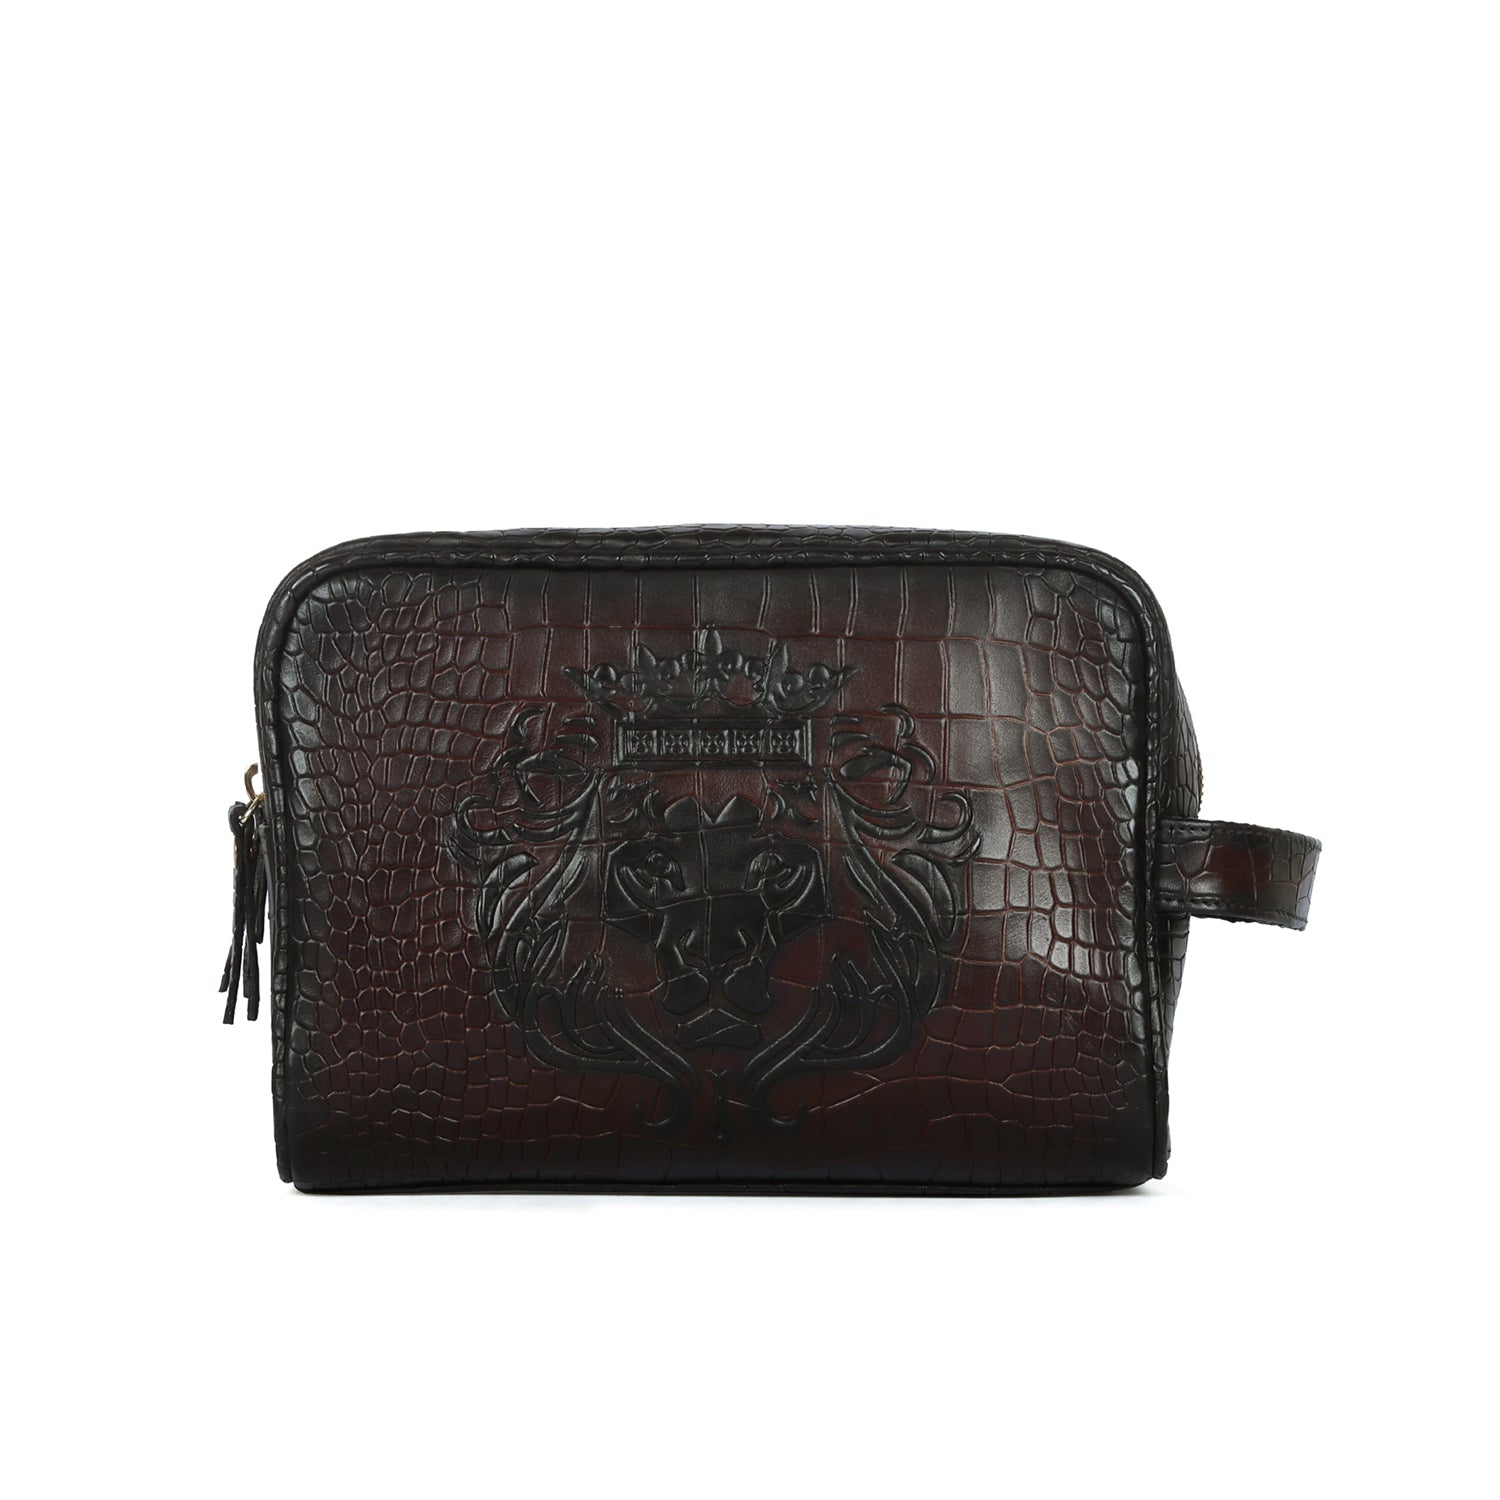 Embossed Lion Deep Cut Dark Brown Leather Toiletry/Slim Kit Travel Bag by Brune & Bareskin